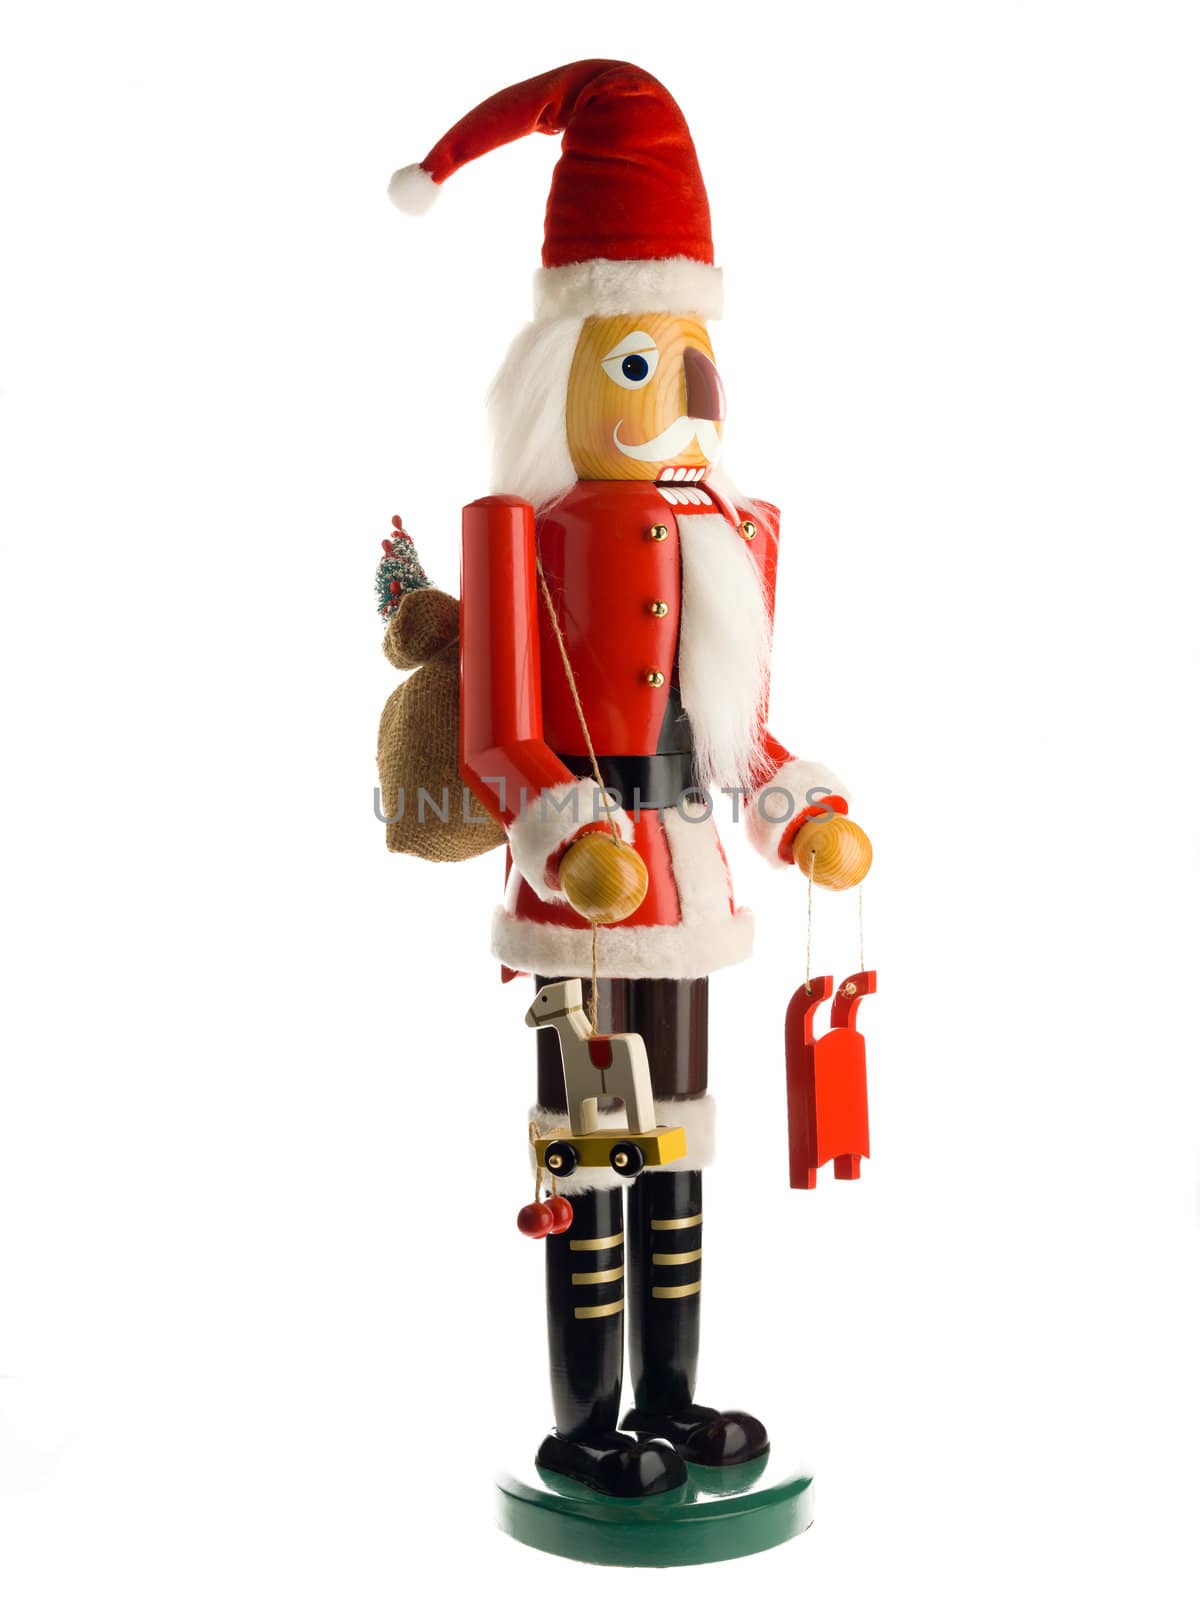 figurine of a santa claus by kozzi